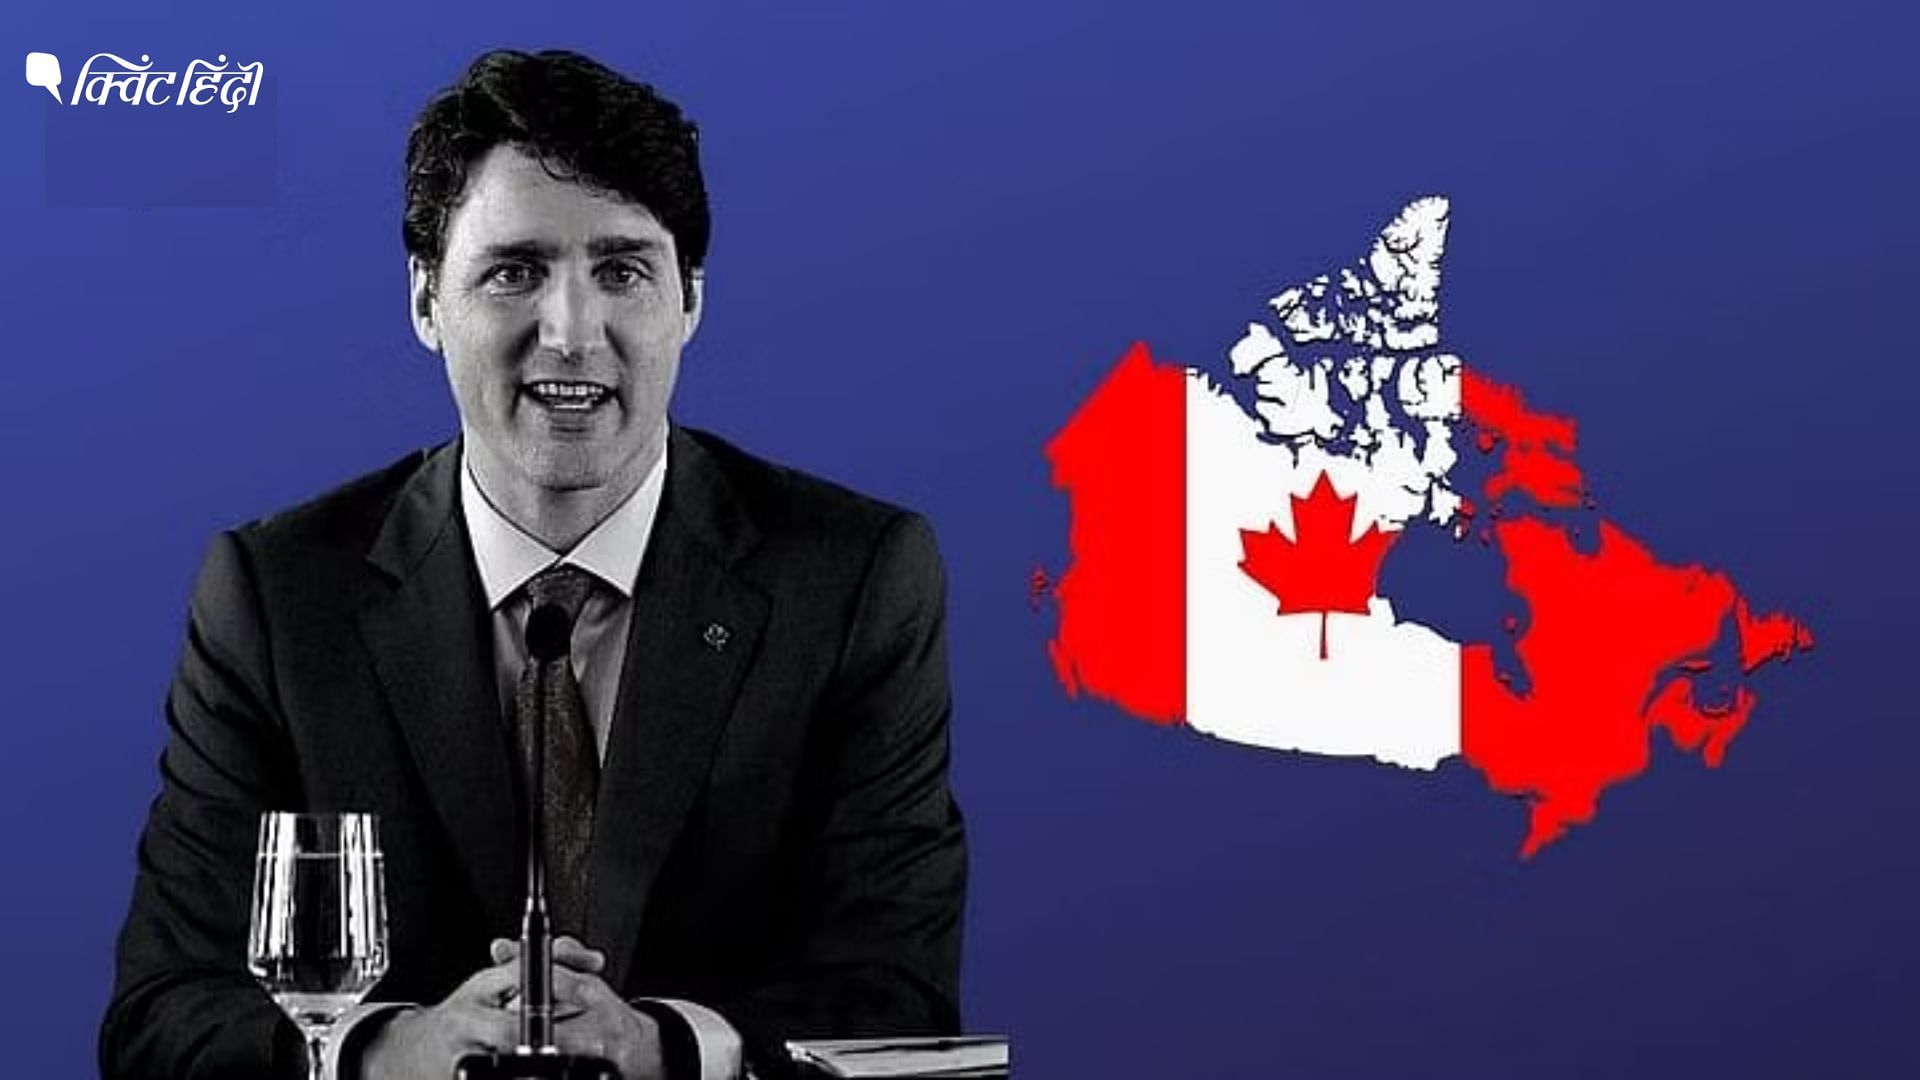 <div class="paragraphs"><p>अंतरराष्ट्रीय छात्रों के आवगमन पर रोक लगा सकता है कनाडा, सरकार कर रही विचार </p></div>